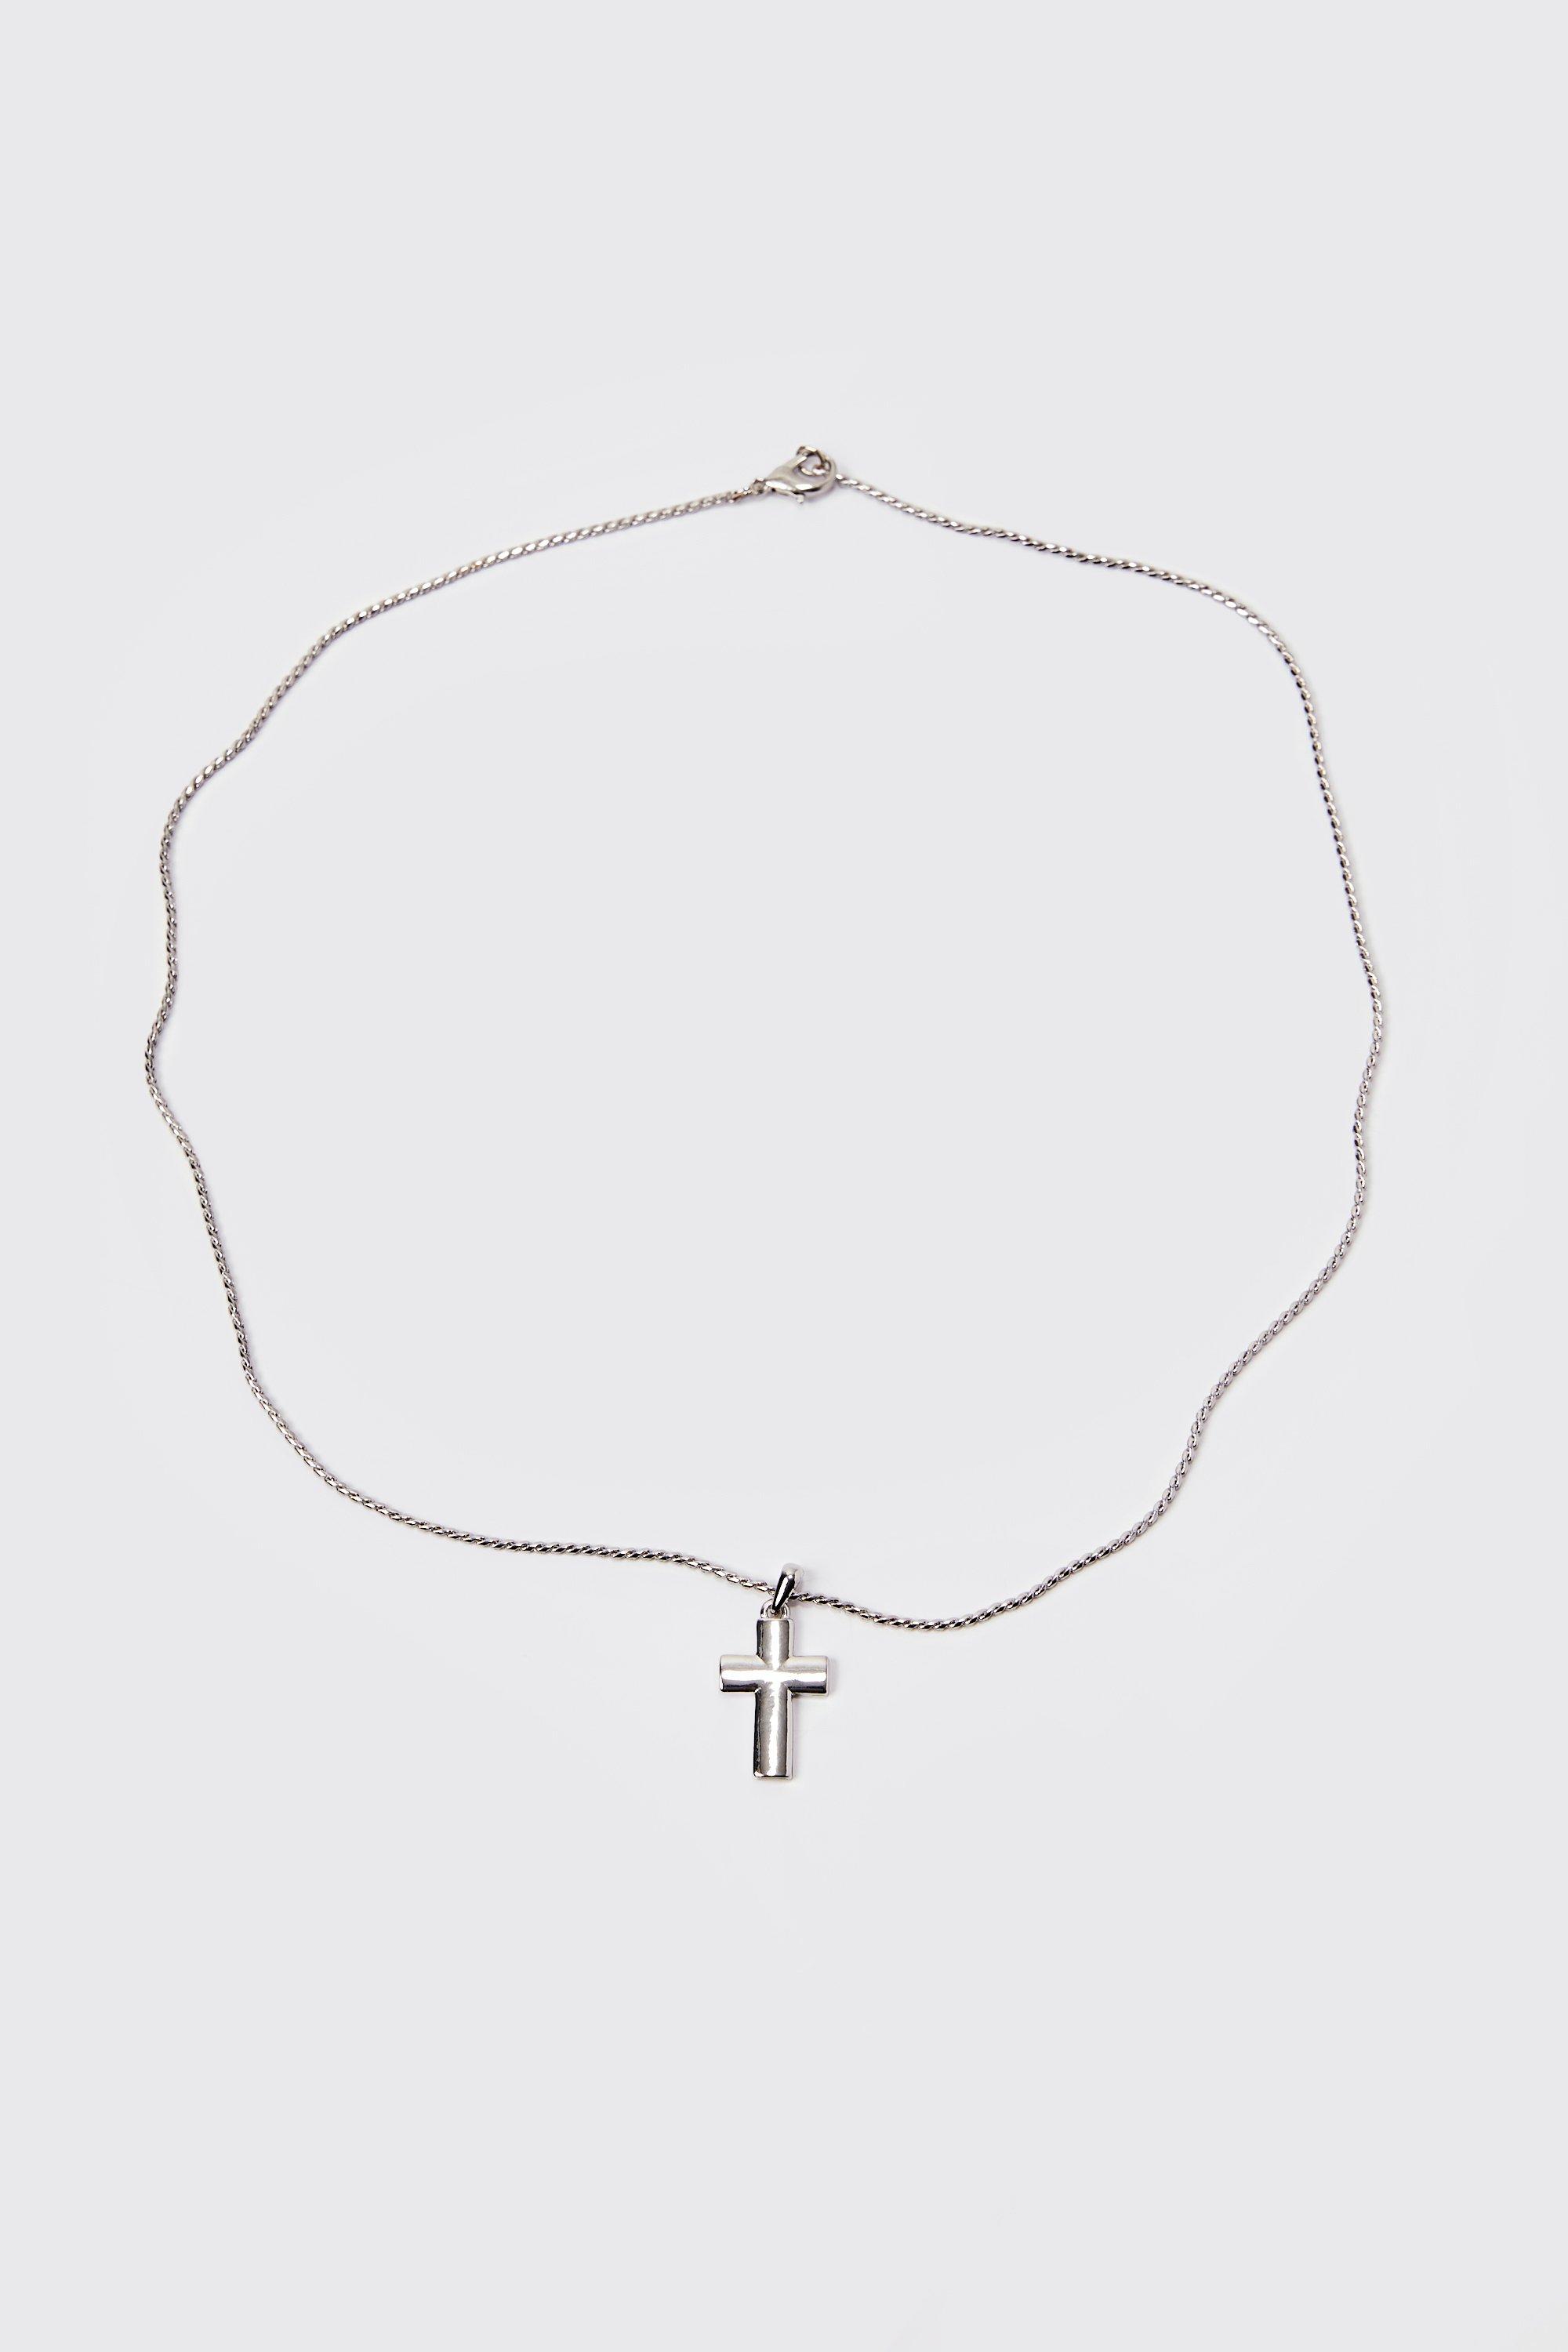 collier à pendentif croix homme - argent - one size, argent